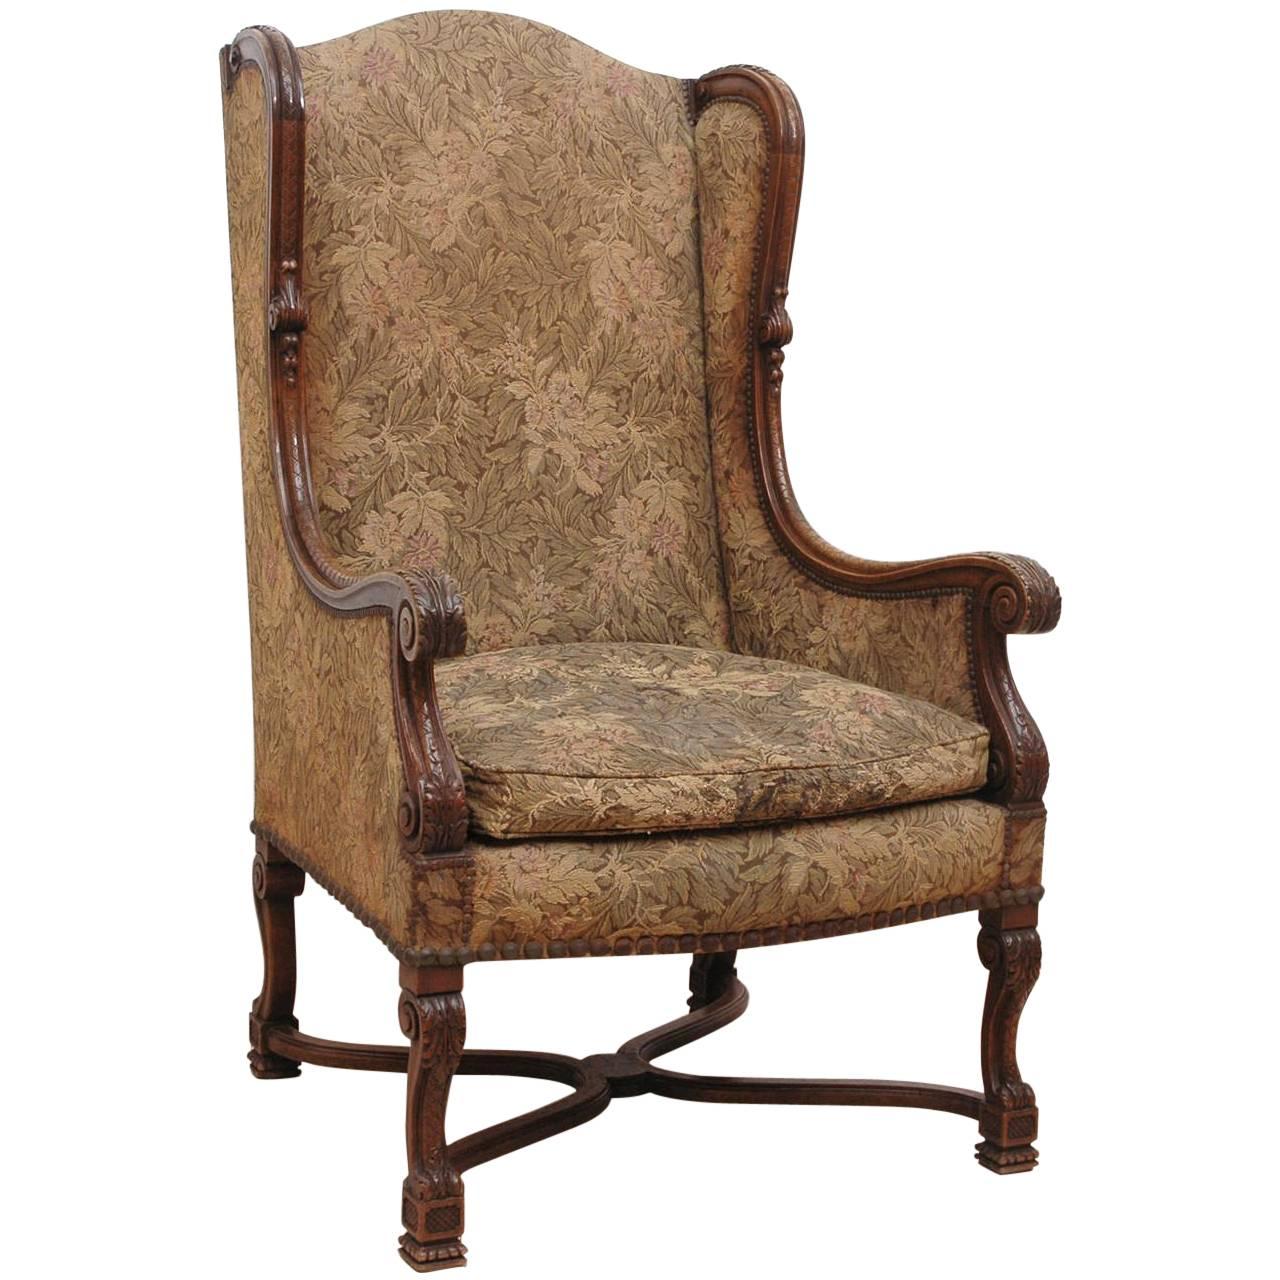 Chaise à oreilles sculptée de style néo-Renaissance du 19ème siècle avec tapisserie